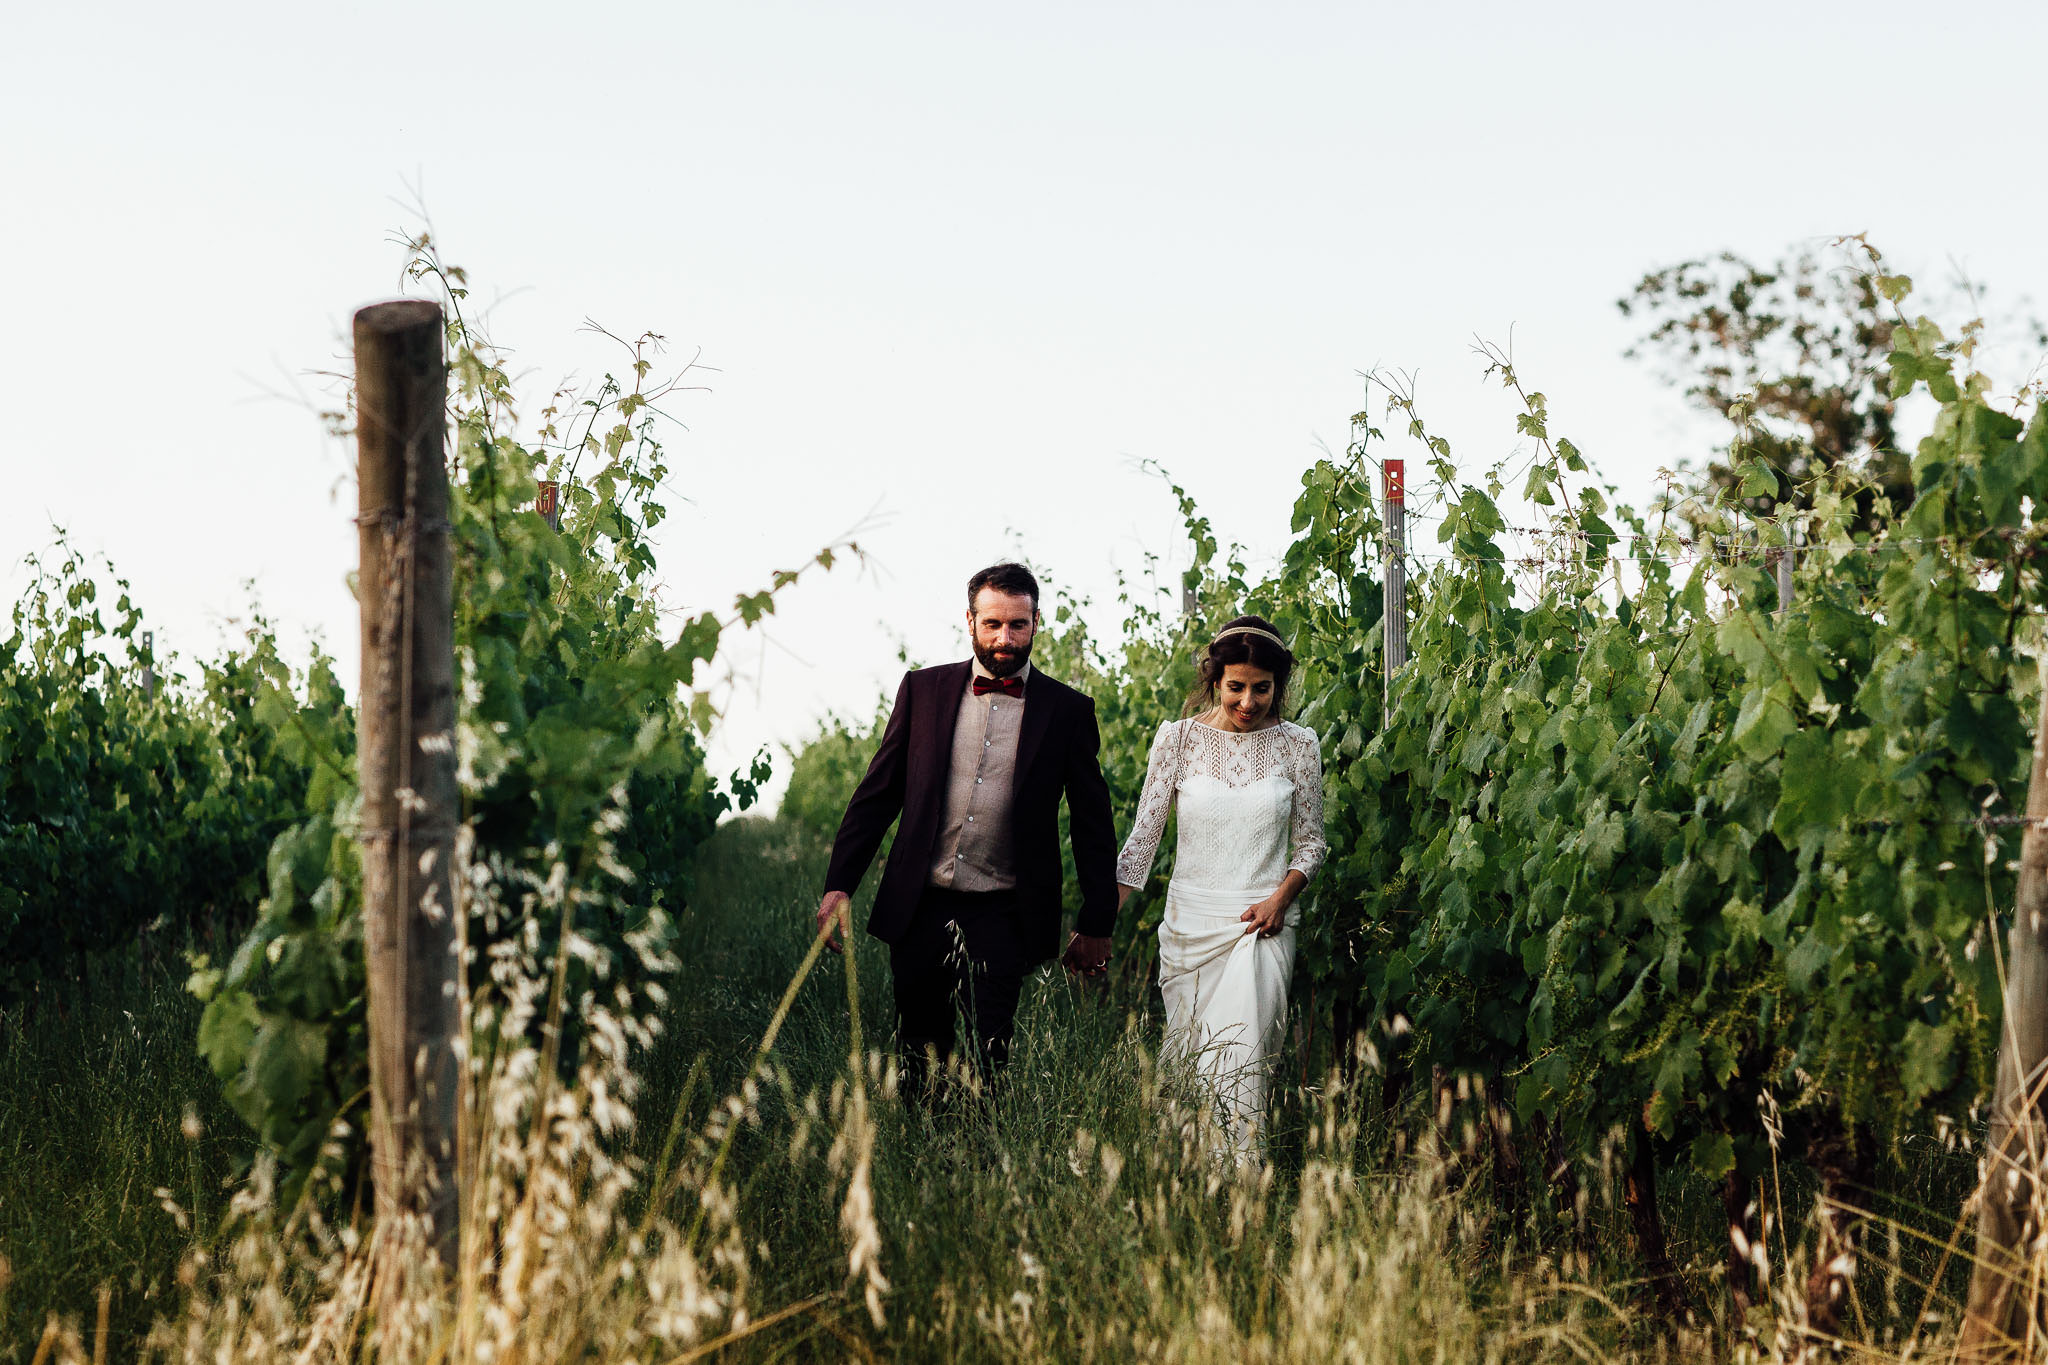 destination wedding vineyard tuscany umbria italy